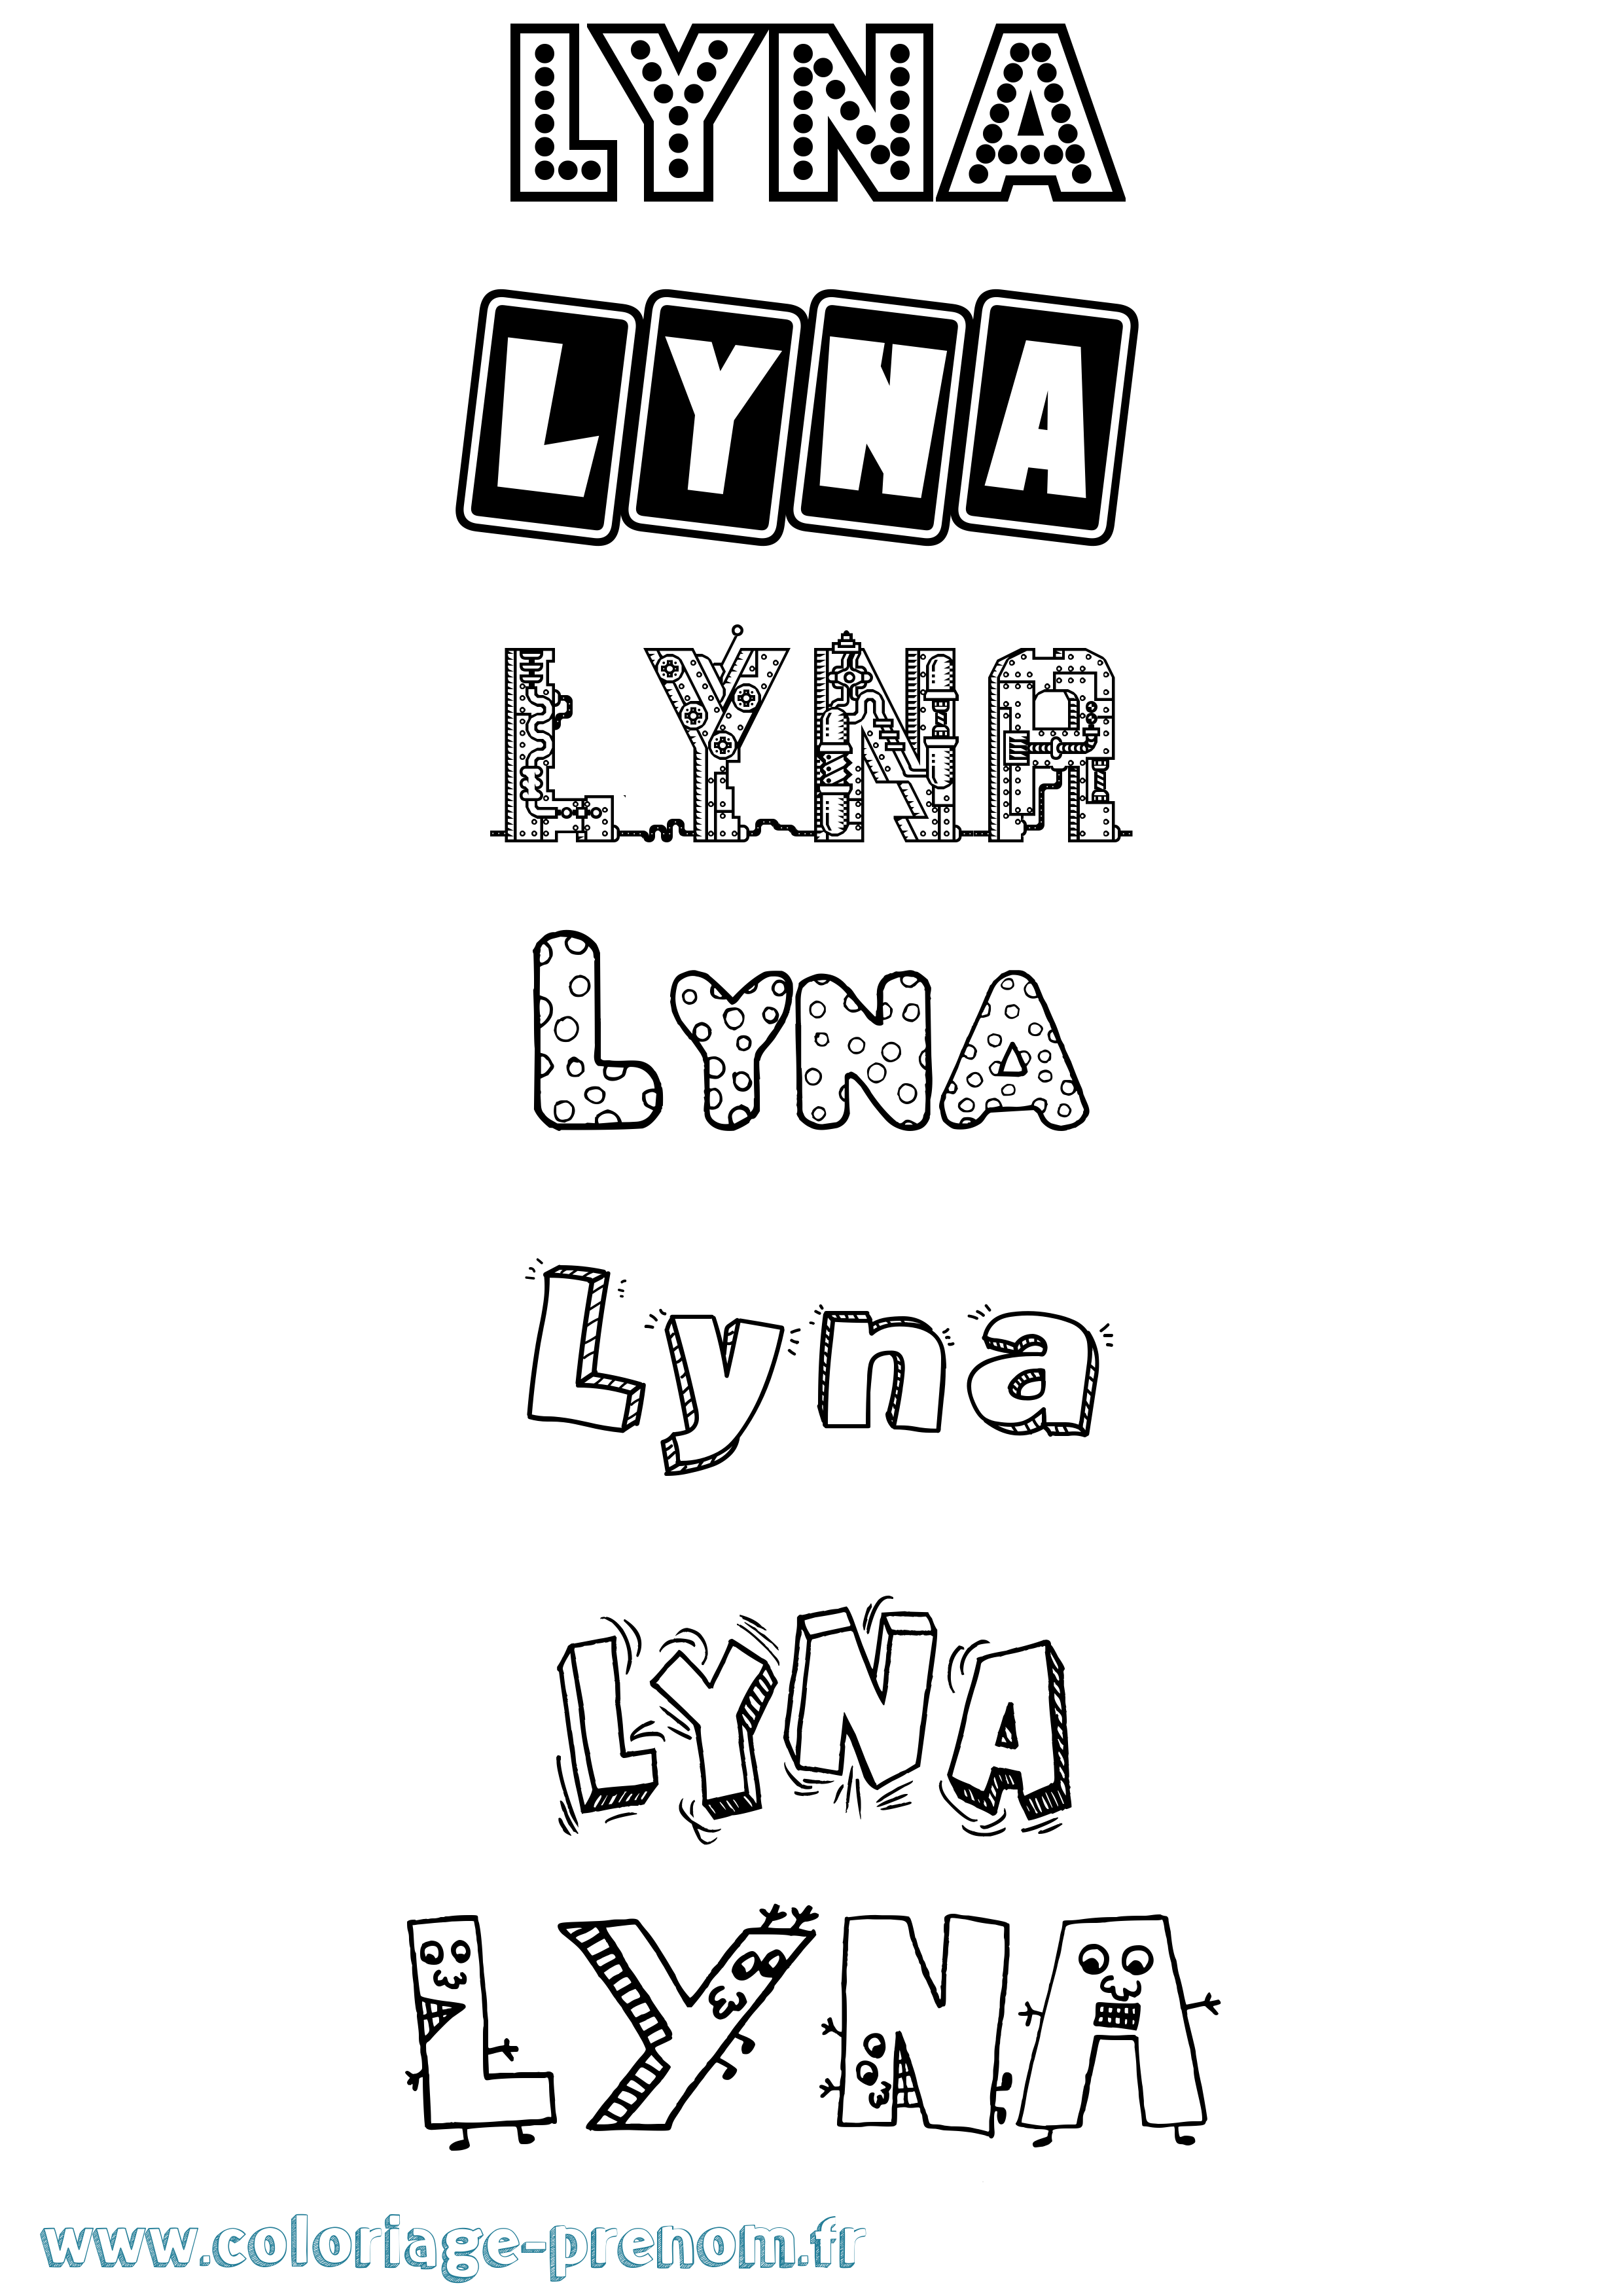 Coloriage prénom Lyna